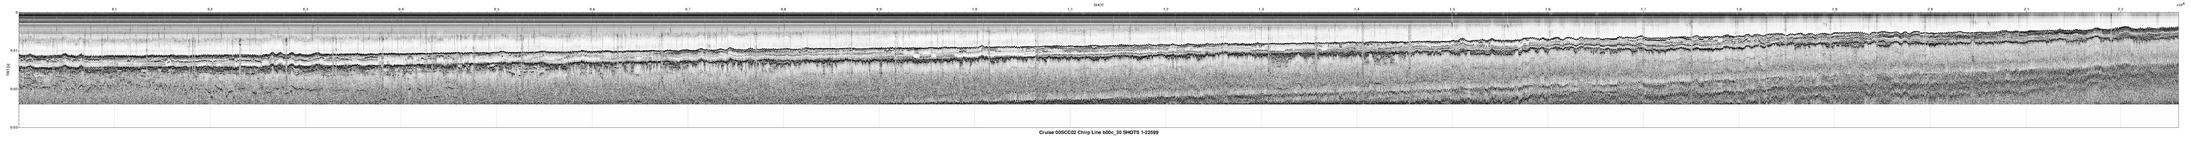 00SCC02 b00c_30 seismic profile image